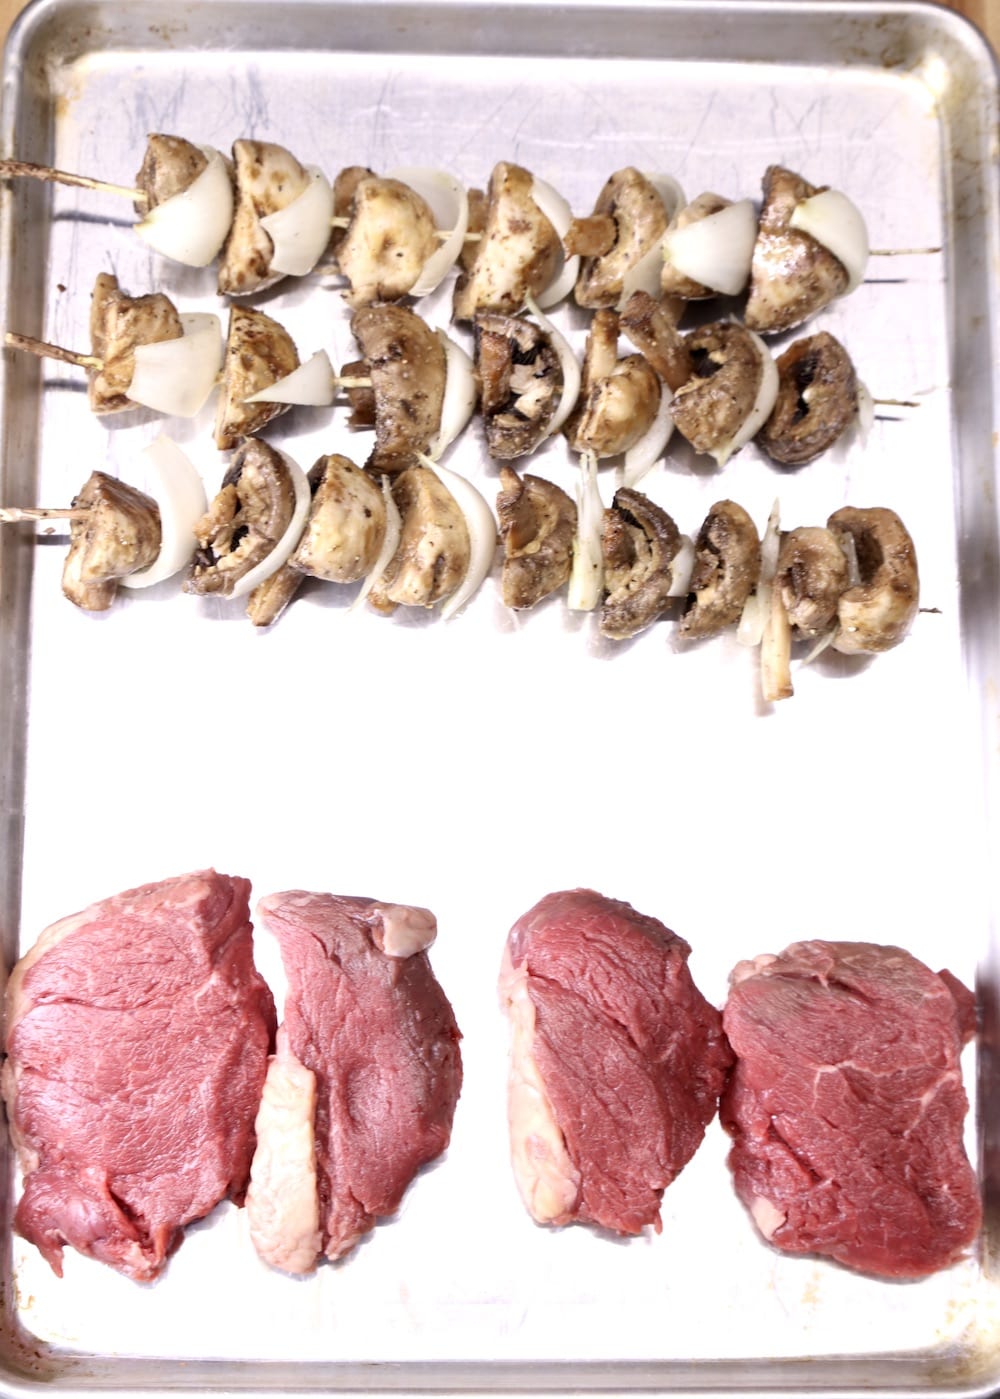 mushroom and onion skewers with 4 tenderloin steaks on pan